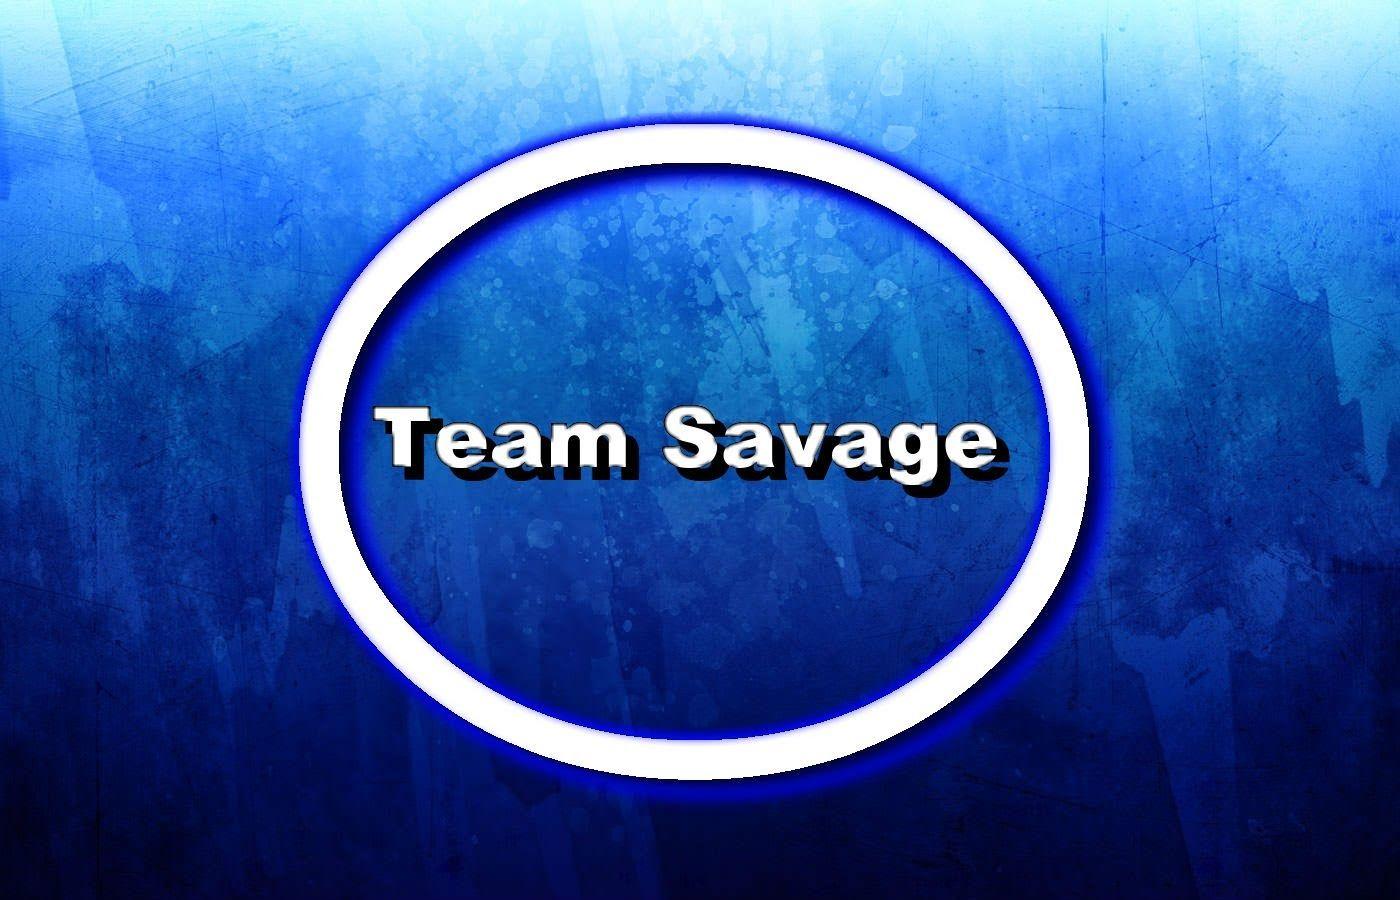 Team Savage Logo - Team savage logo